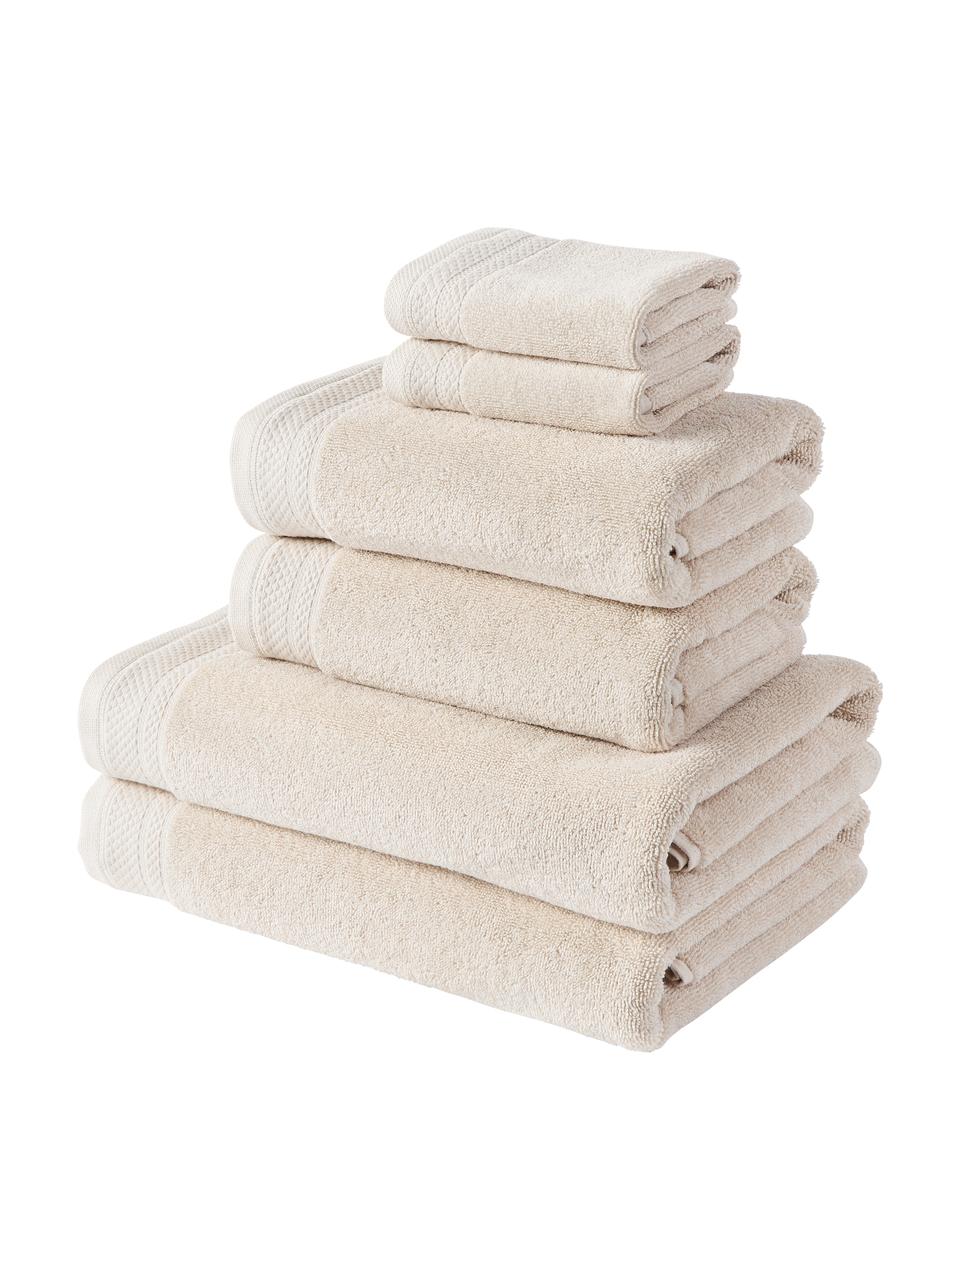 Lot de serviettes de bain en coton bio Premium, 6 élém., 100 % coton bio, certifié GOTS
Qualité supérieure 600 g/m²

Le matériau est certifié STANDARD 100 OEKO-TEX®, IS025 189577, OETI, Beige clair, Lot de différentes tailles